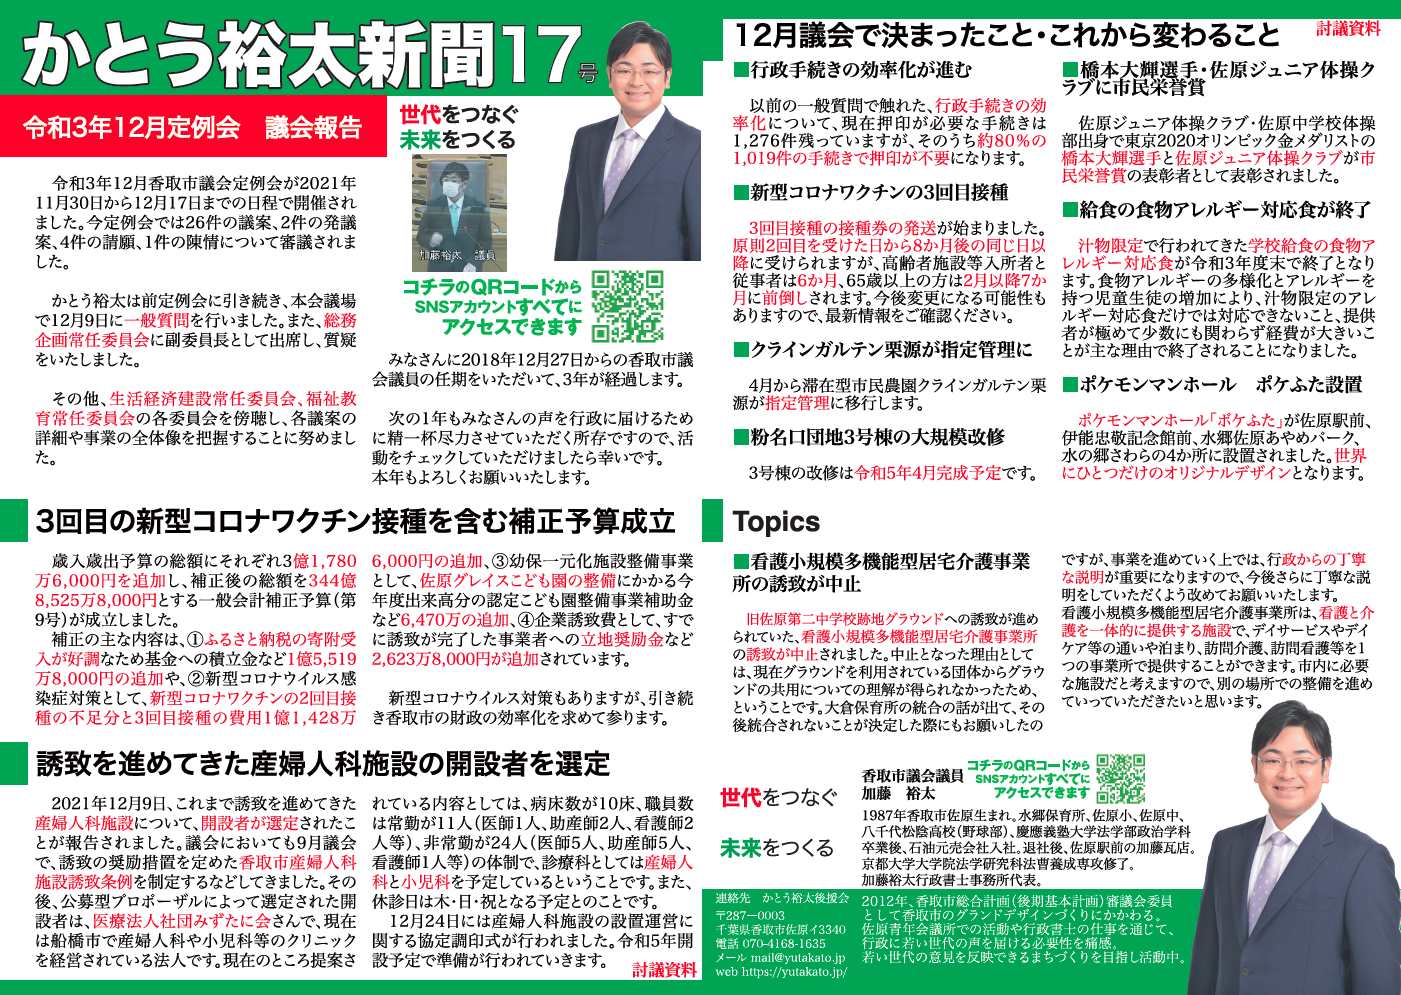 かとう裕太新聞第17号令和3年12月香取市議会定例会報告web1